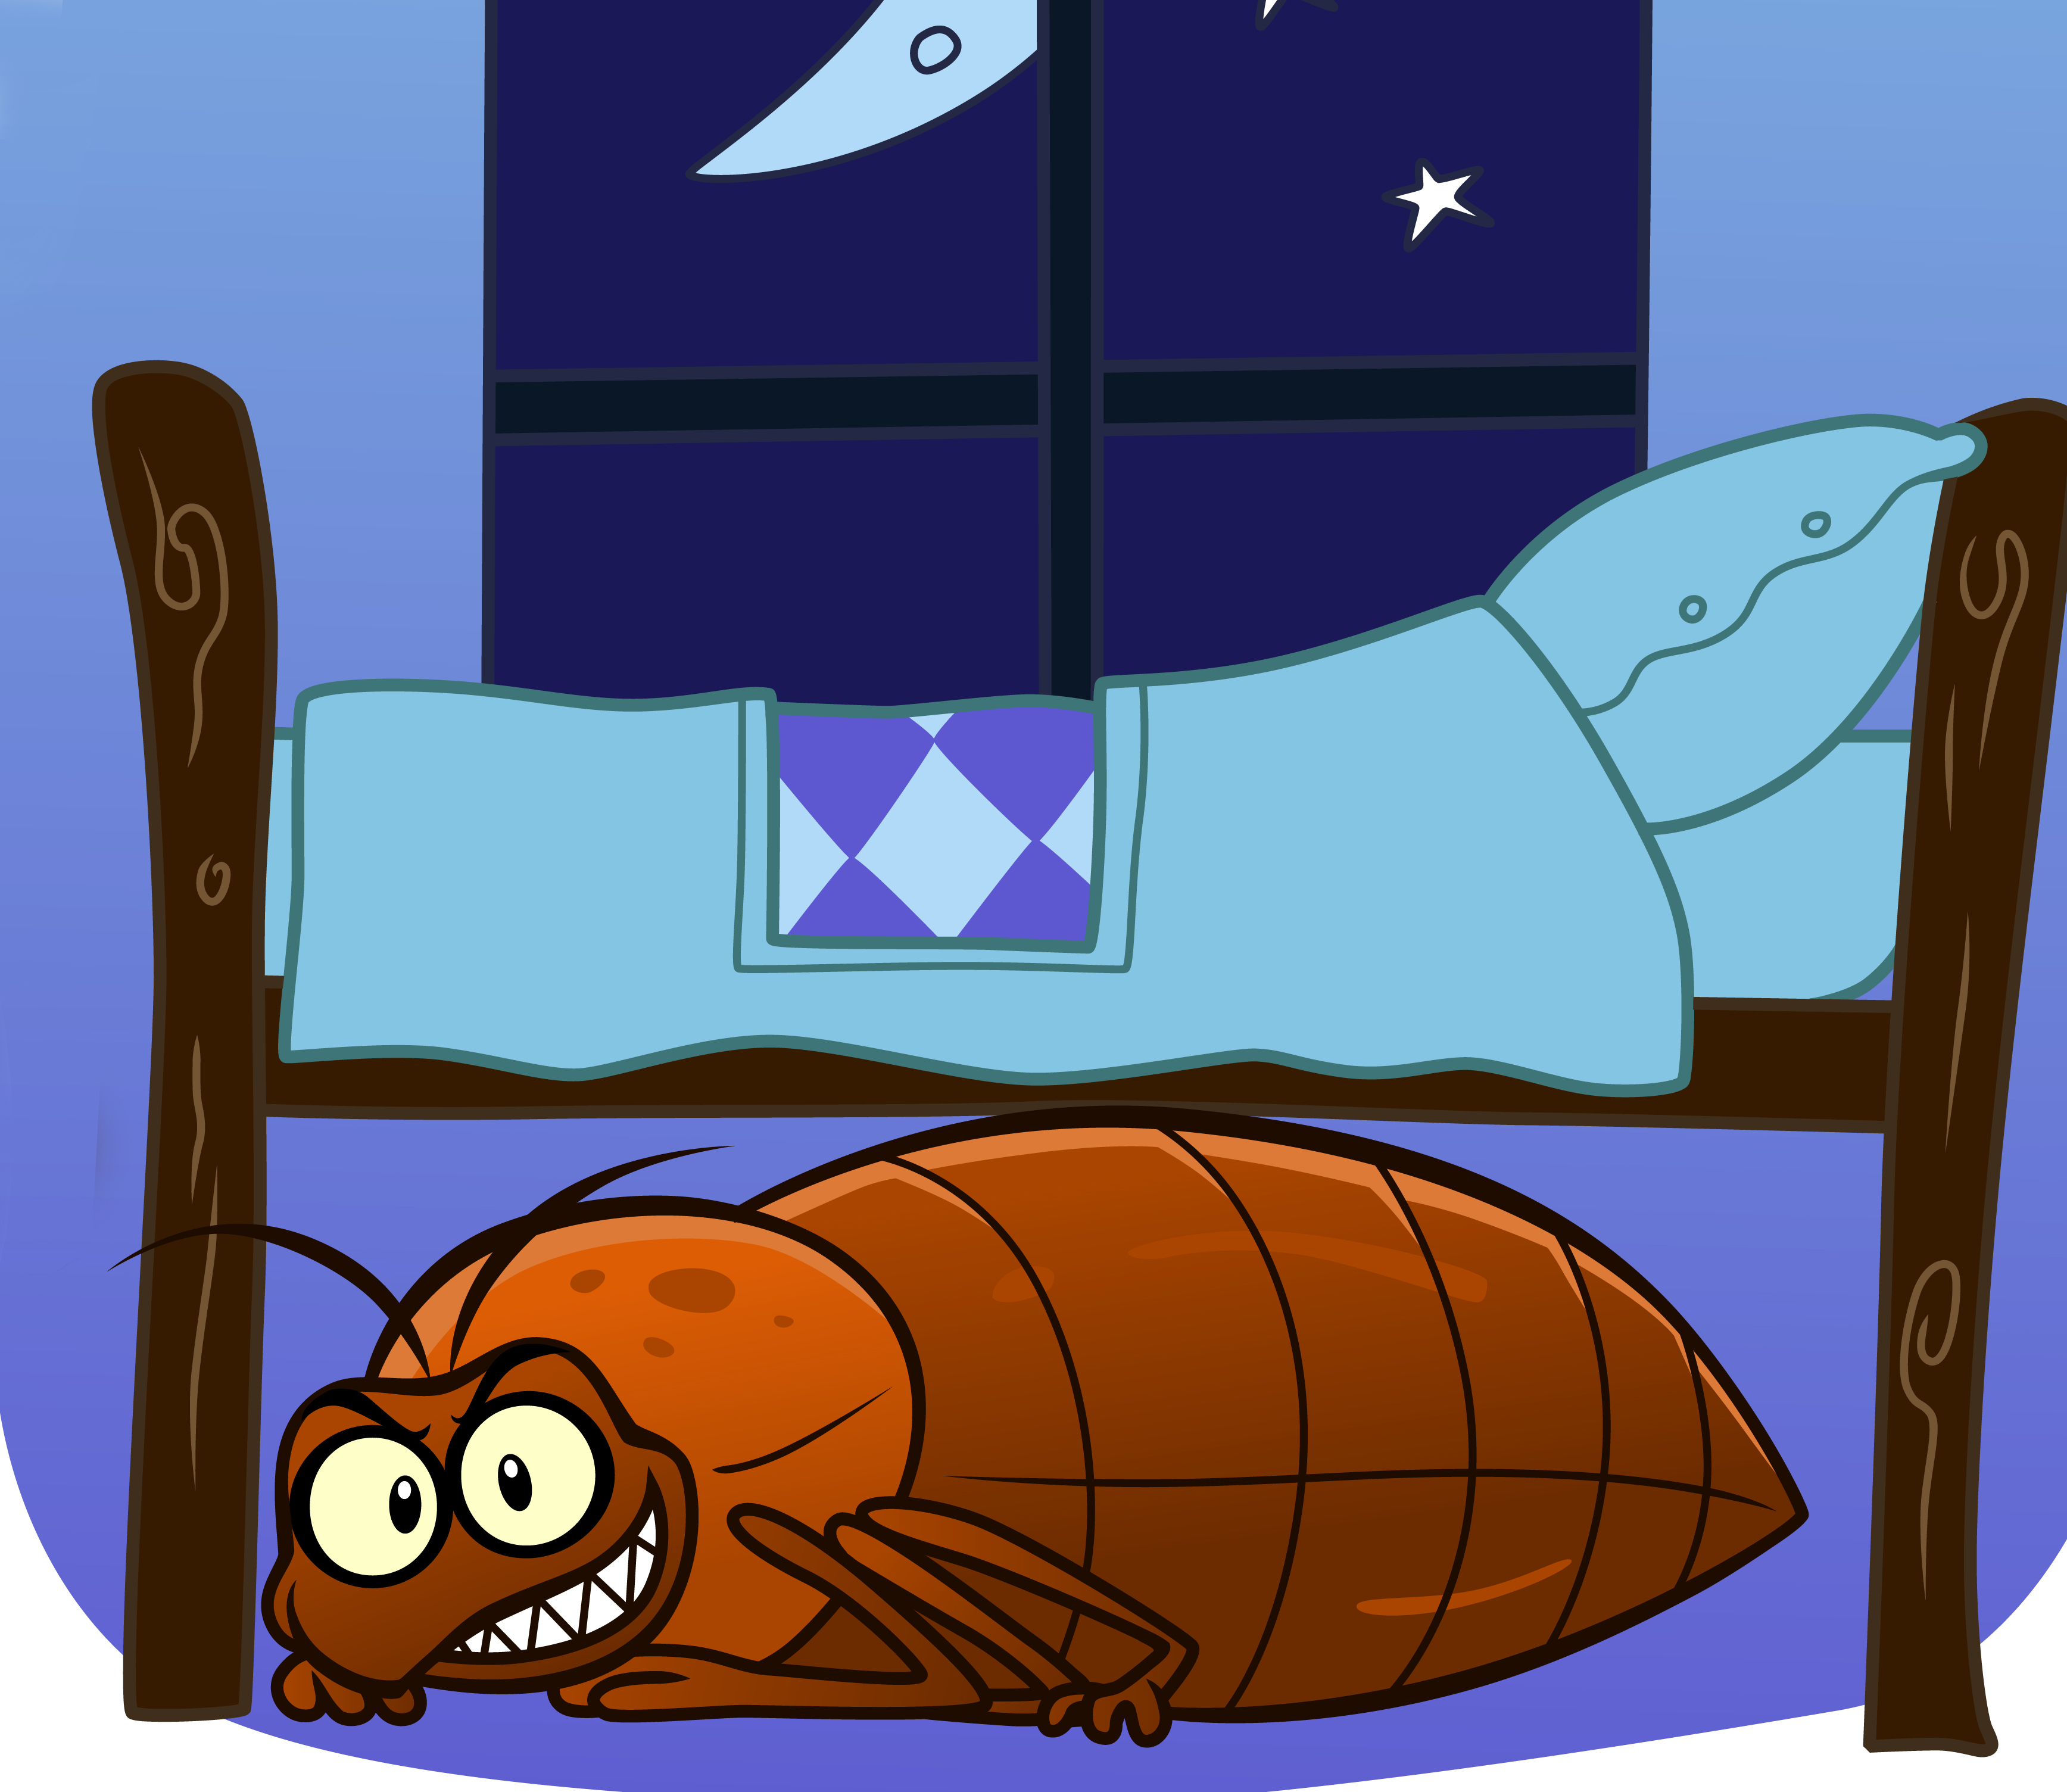 Bedbug under your bed